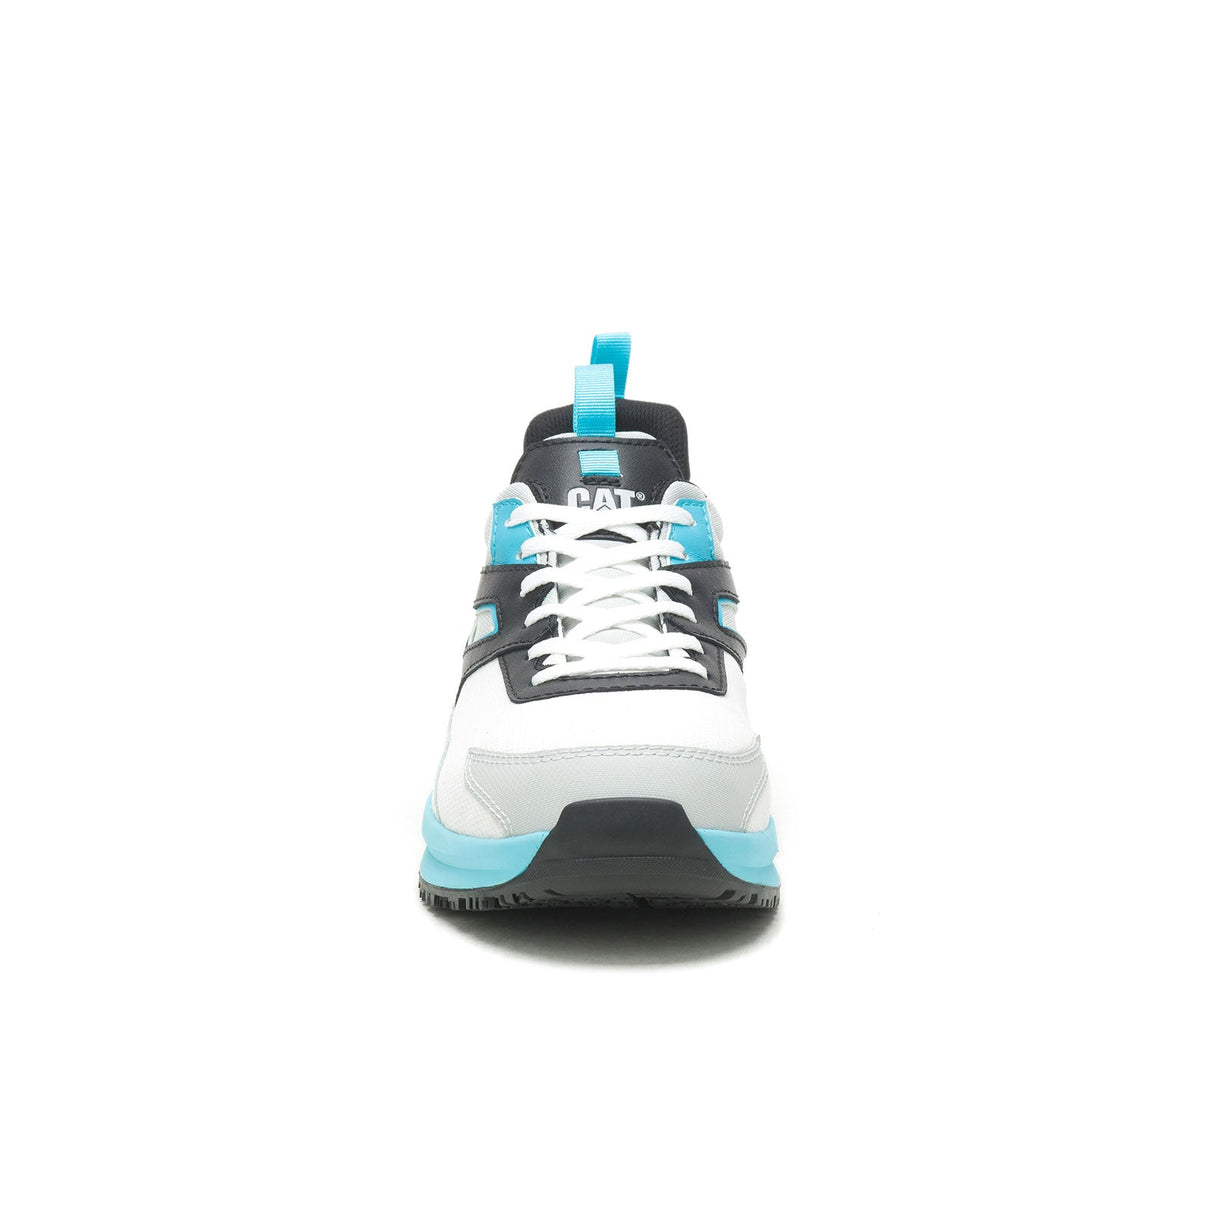 Caterpillar Streamline Runner Men's Composite-Toe Work Shoes P91492-2